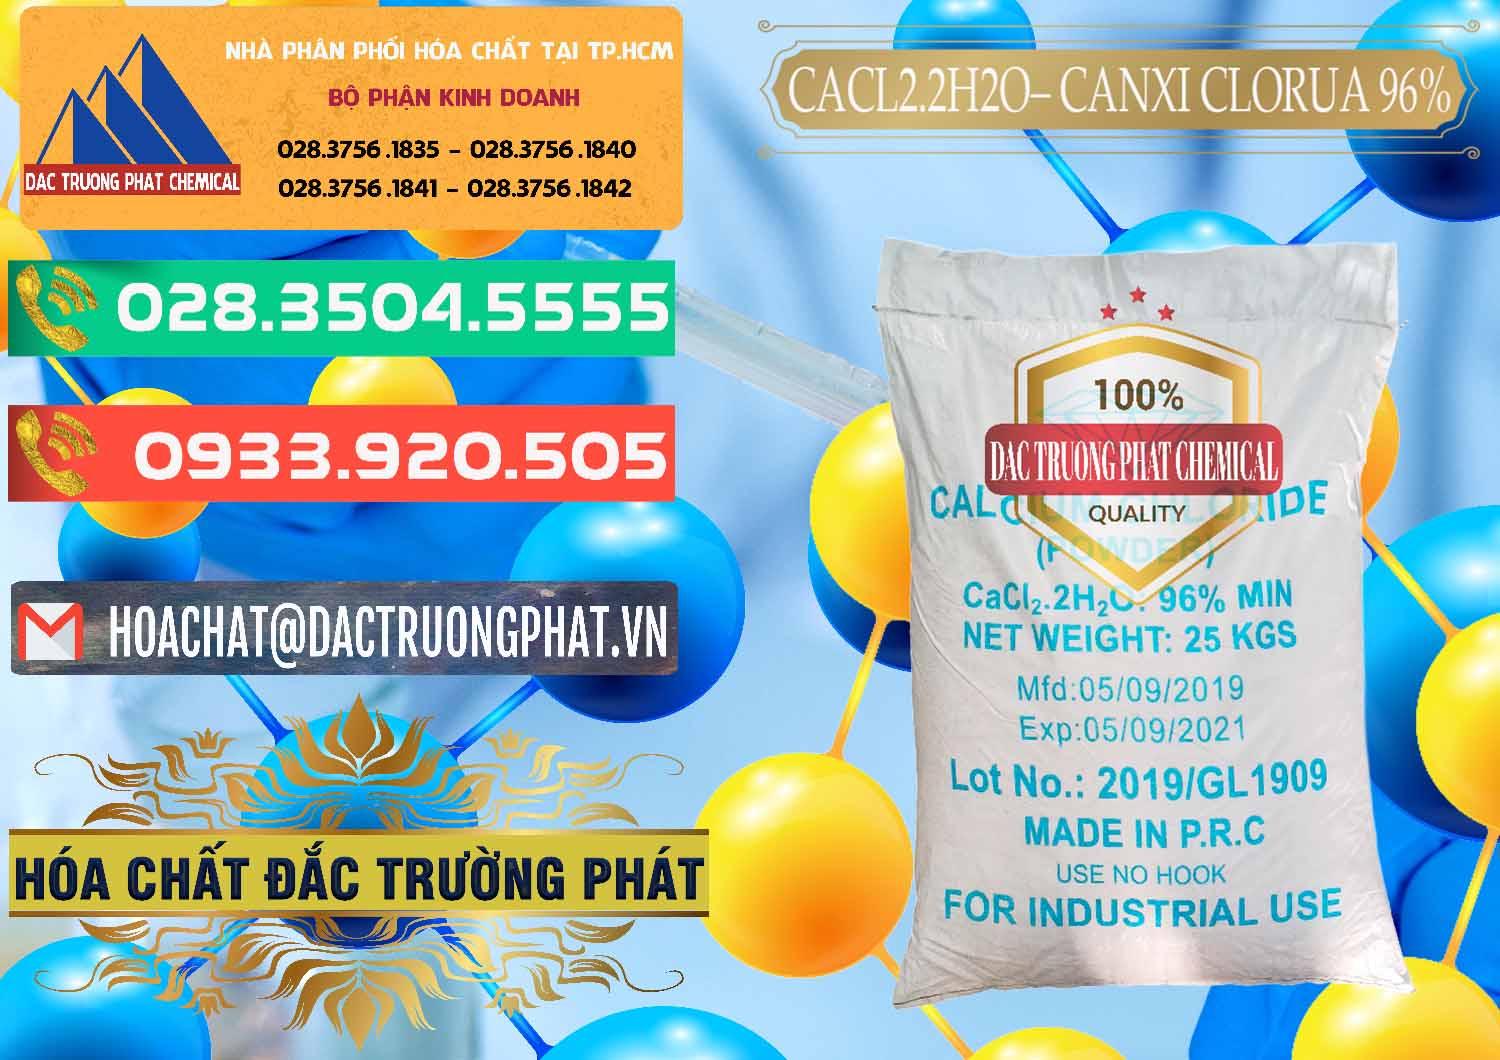 Chuyên cung cấp & bán CaCl2 – Canxi Clorua 96% Logo Kim Cương Trung Quốc China - 0040 - Đơn vị cung cấp ( bán ) hóa chất tại TP.HCM - congtyhoachat.com.vn